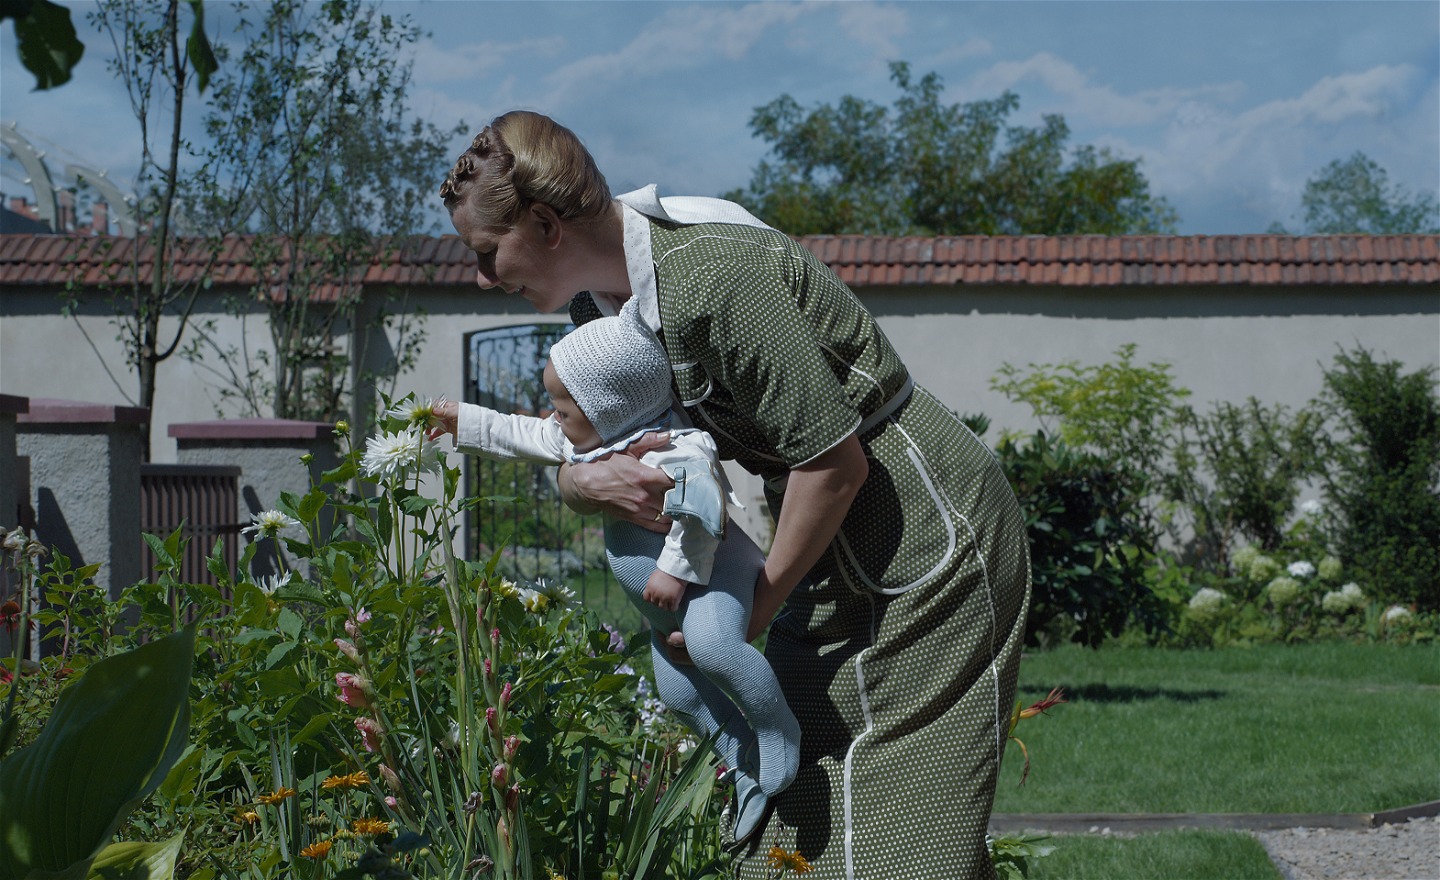 Kvinna i grön klänning står i en trädgård. Hon håller i en bebis som känner på en blomma som växer i rabatten. Bakom dem syns muren till ett koncentrationsläger.